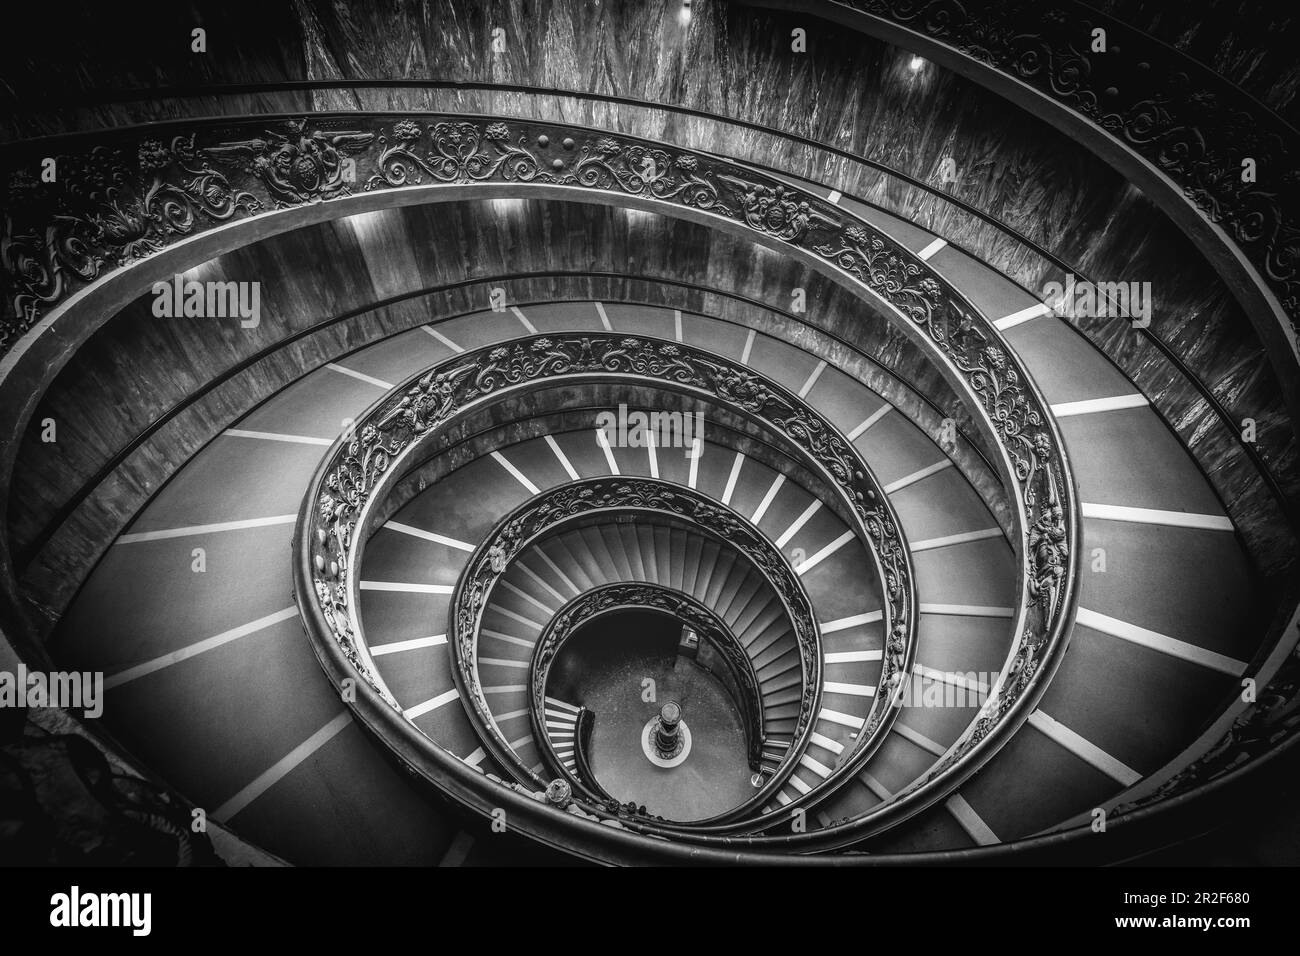 Les escaliers de Bramante dans les musées du Vatican à Rome, Italie Banque D'Images